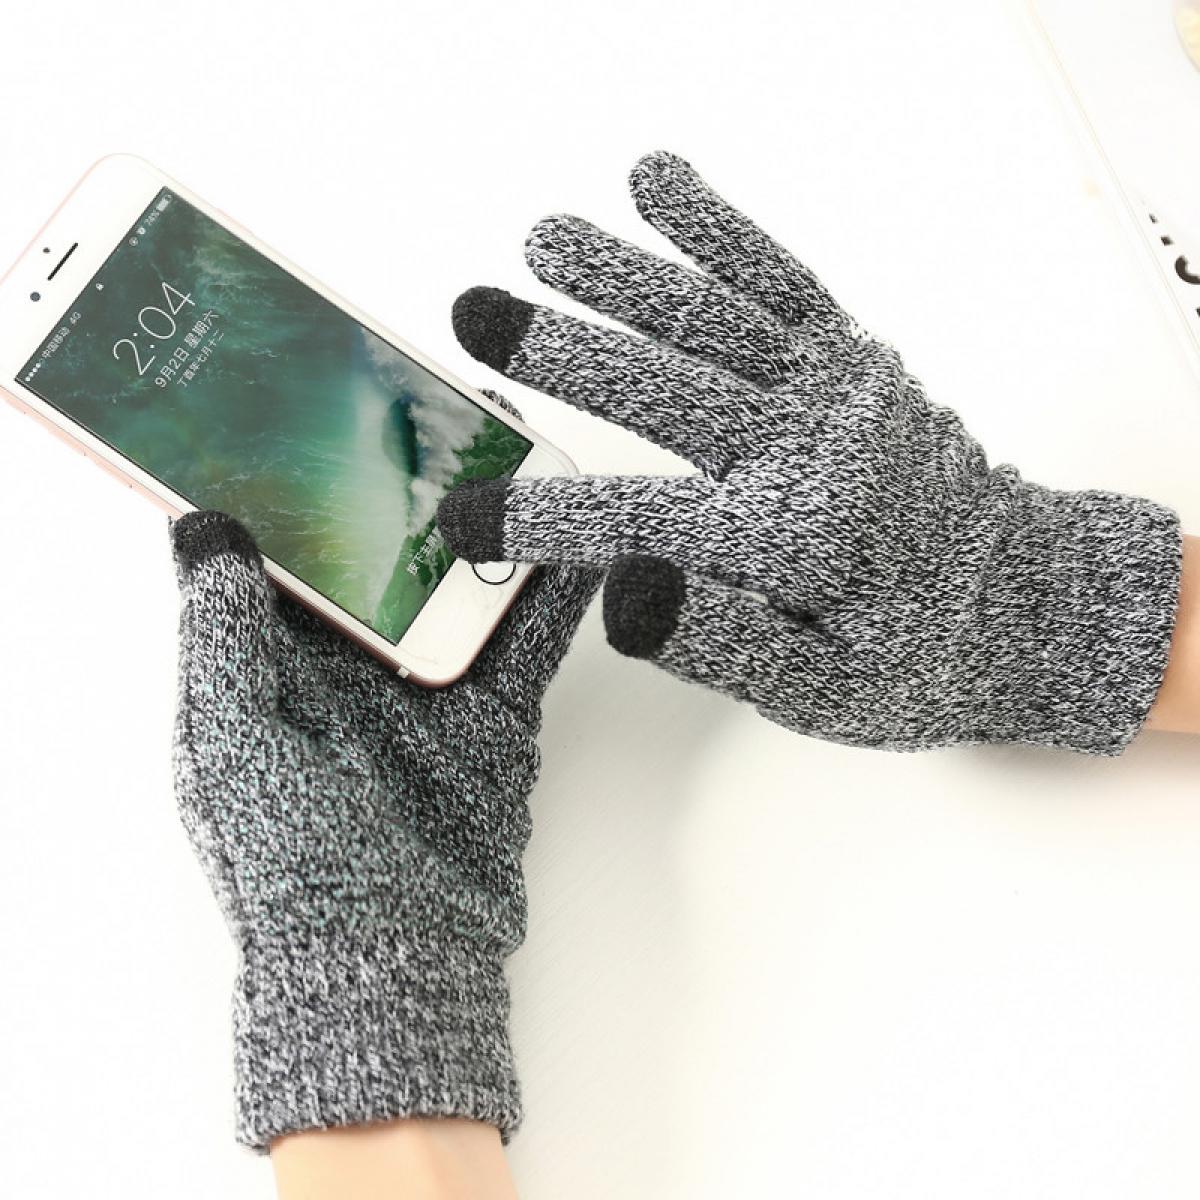 Shot - Gants Homme tactiles pour XIAOMI Redmi Note 7 Smartphone Taille M 3 doigts Hiver (GRIS) - Autres accessoires smartphone